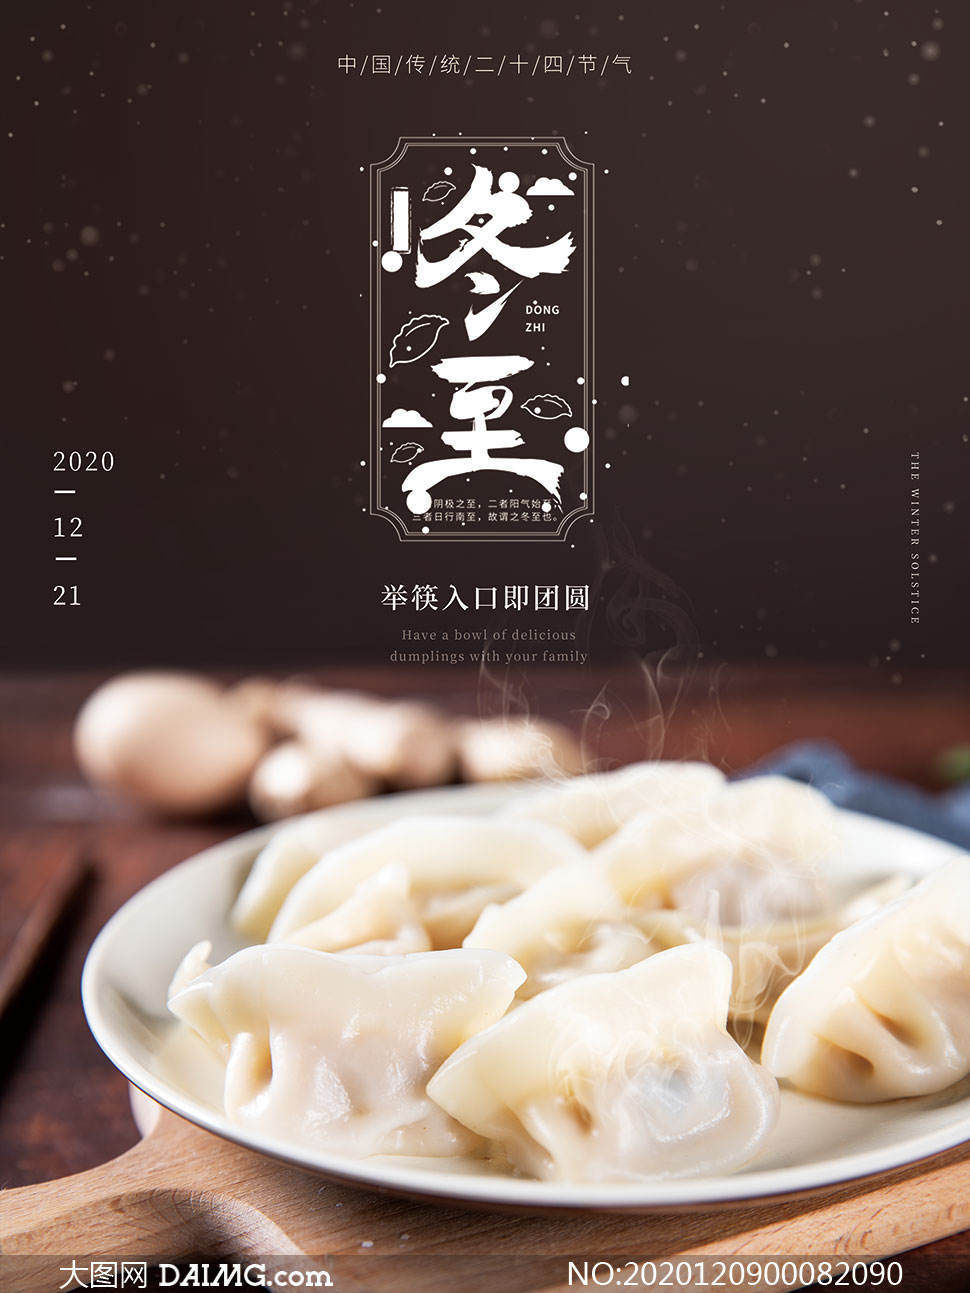 冬至吃饺子主题宣传单设计psd素材